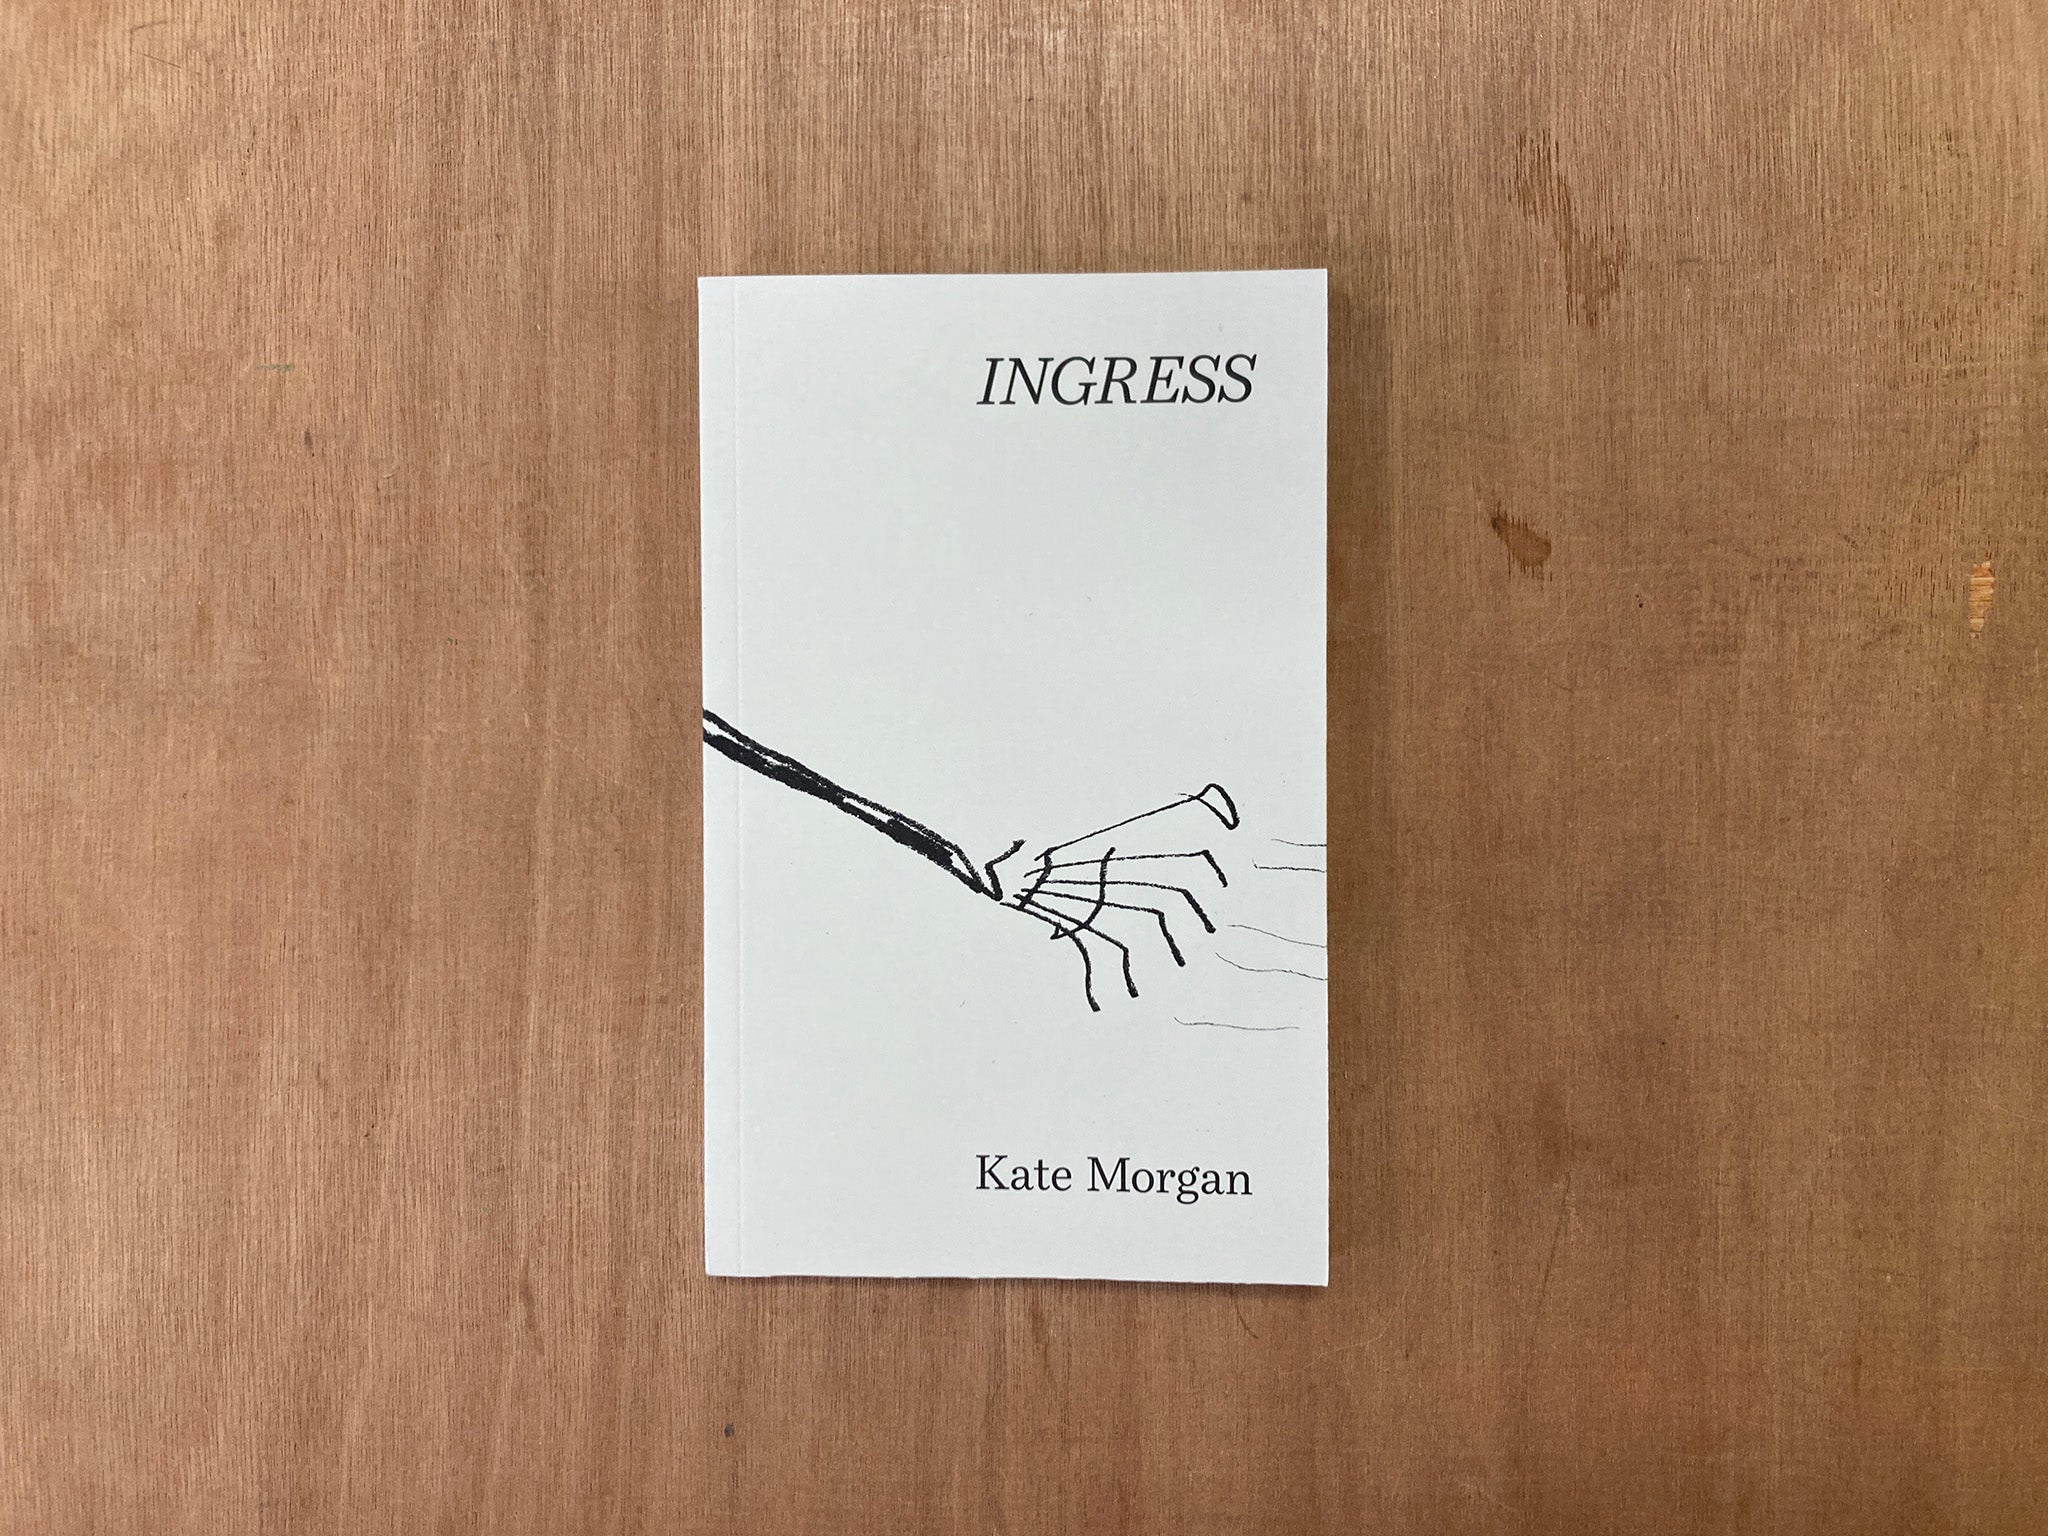 INGRESS by Kate Morgan